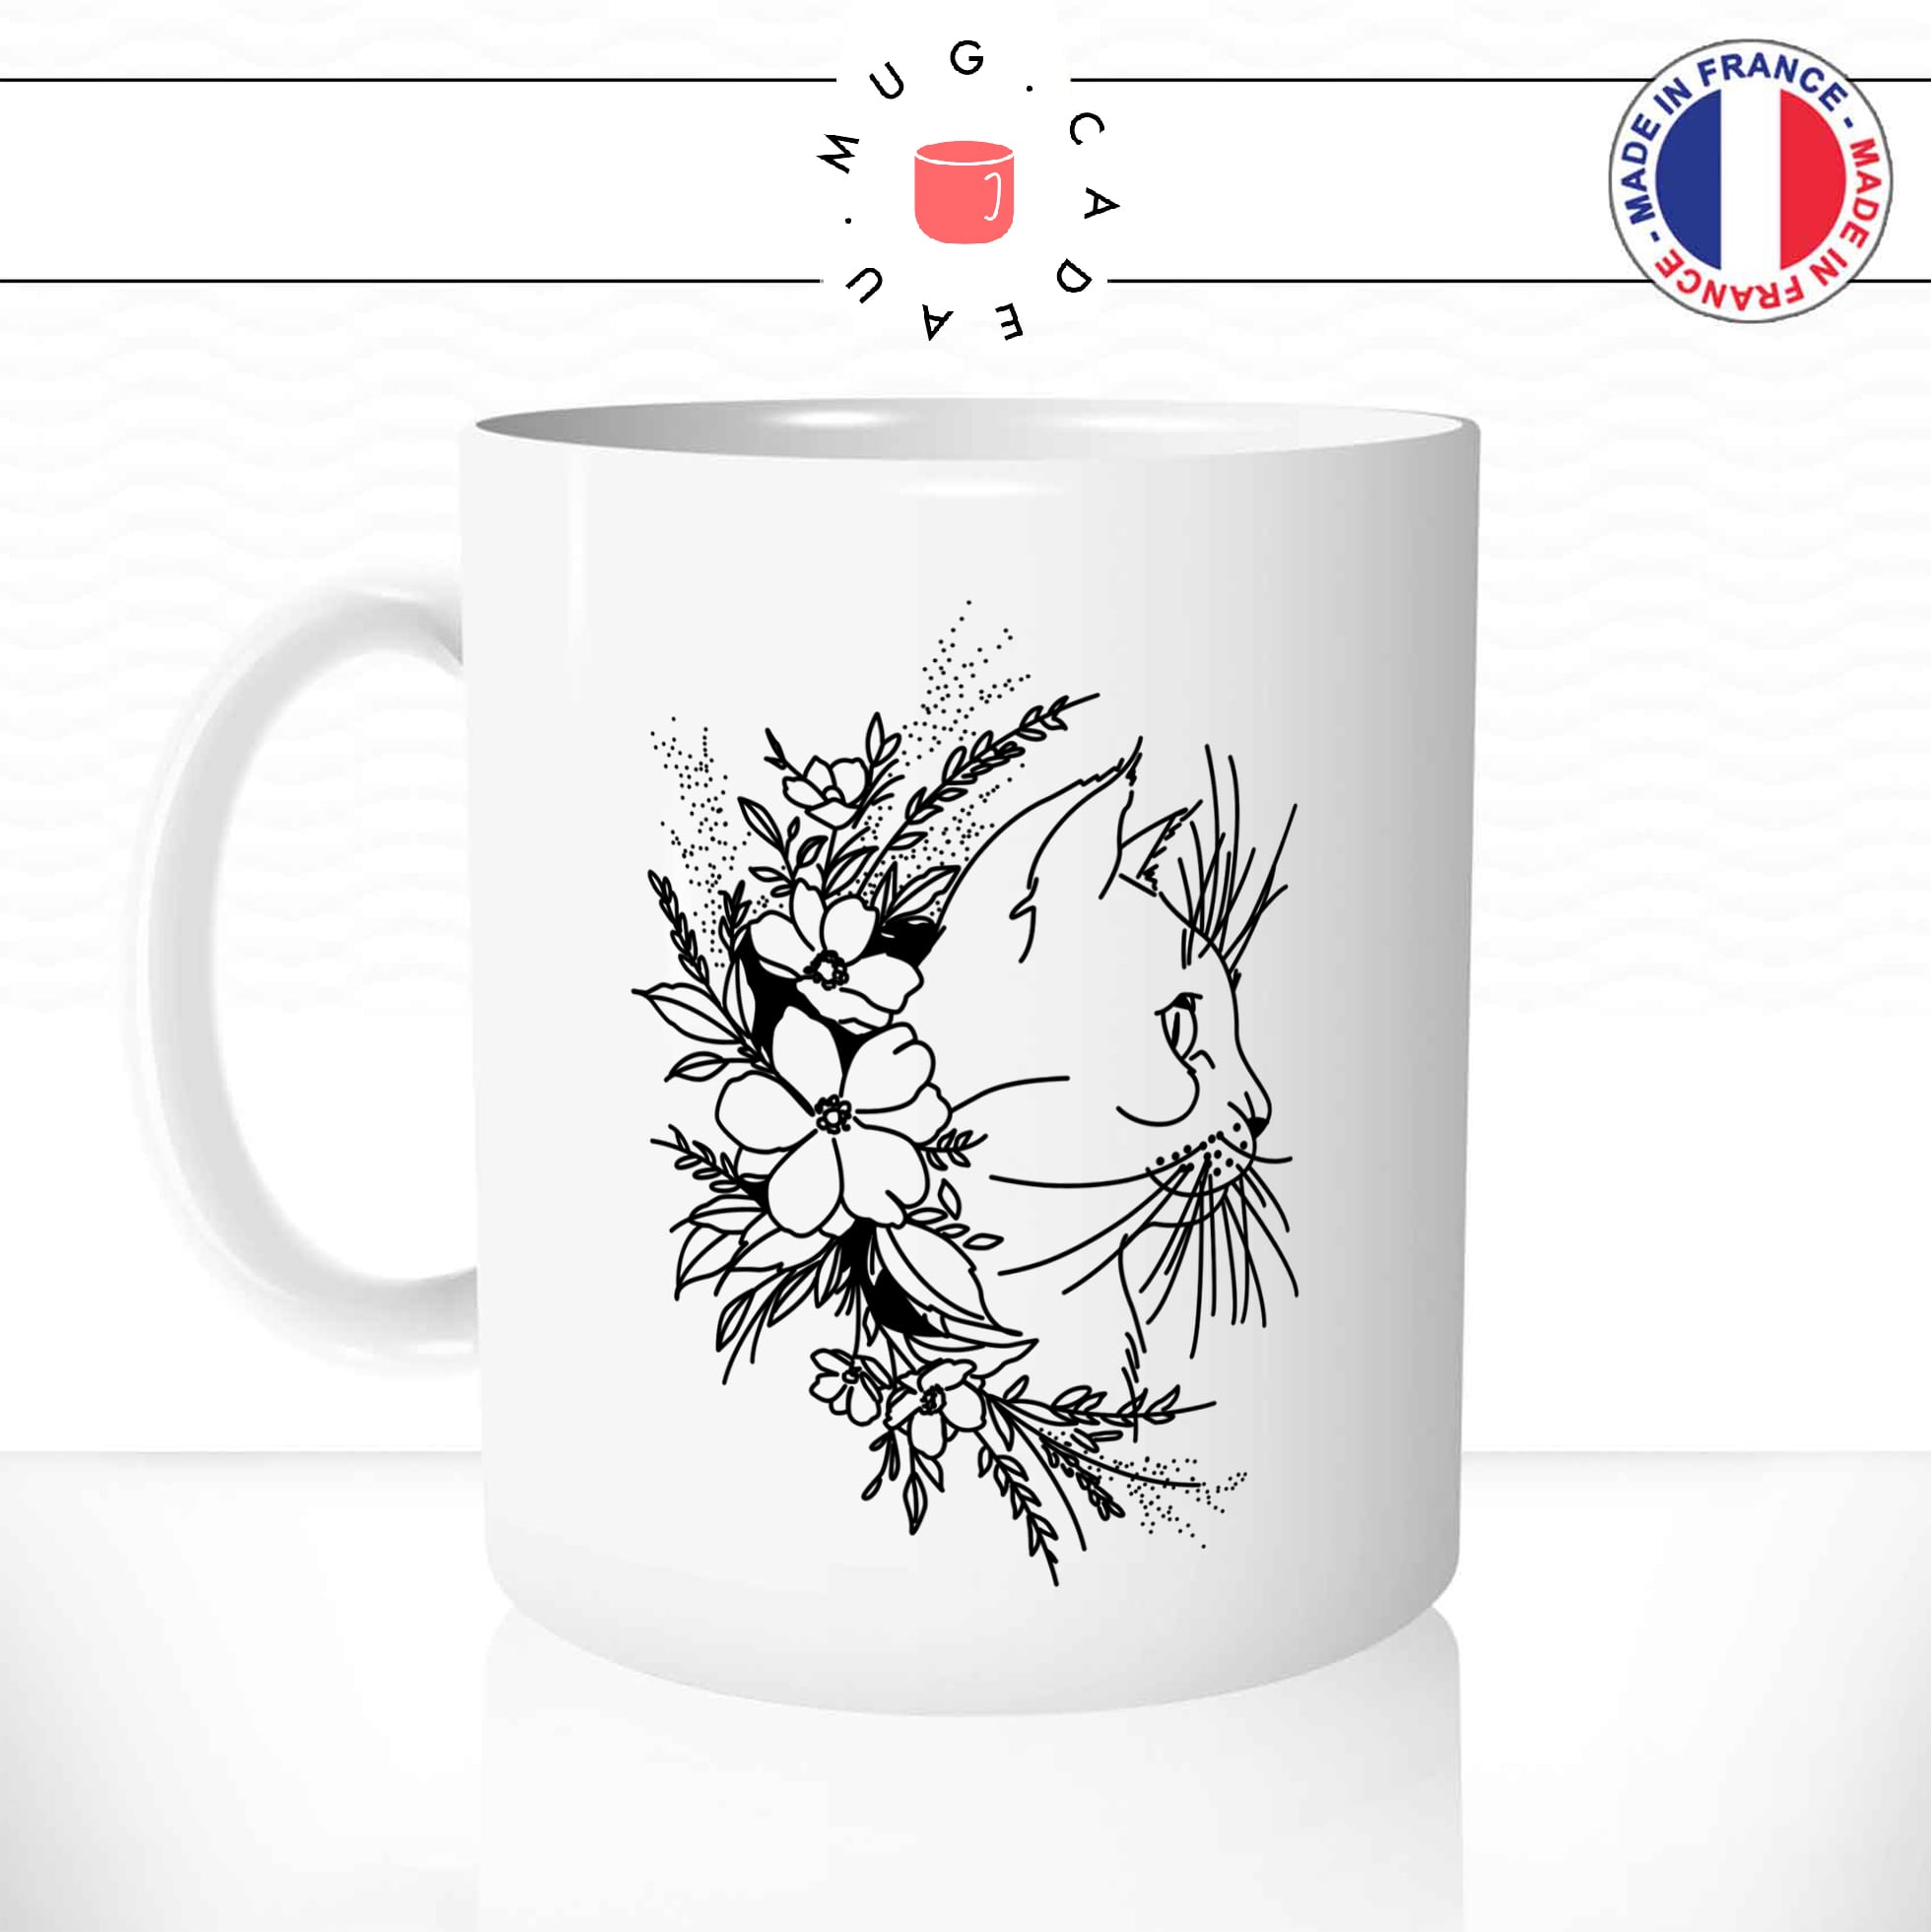 mug-tasse-chat-chaton-fleurs-tête-bouquet-mignon-dessin-animal-cafe-thé-idée-cadeau-original1